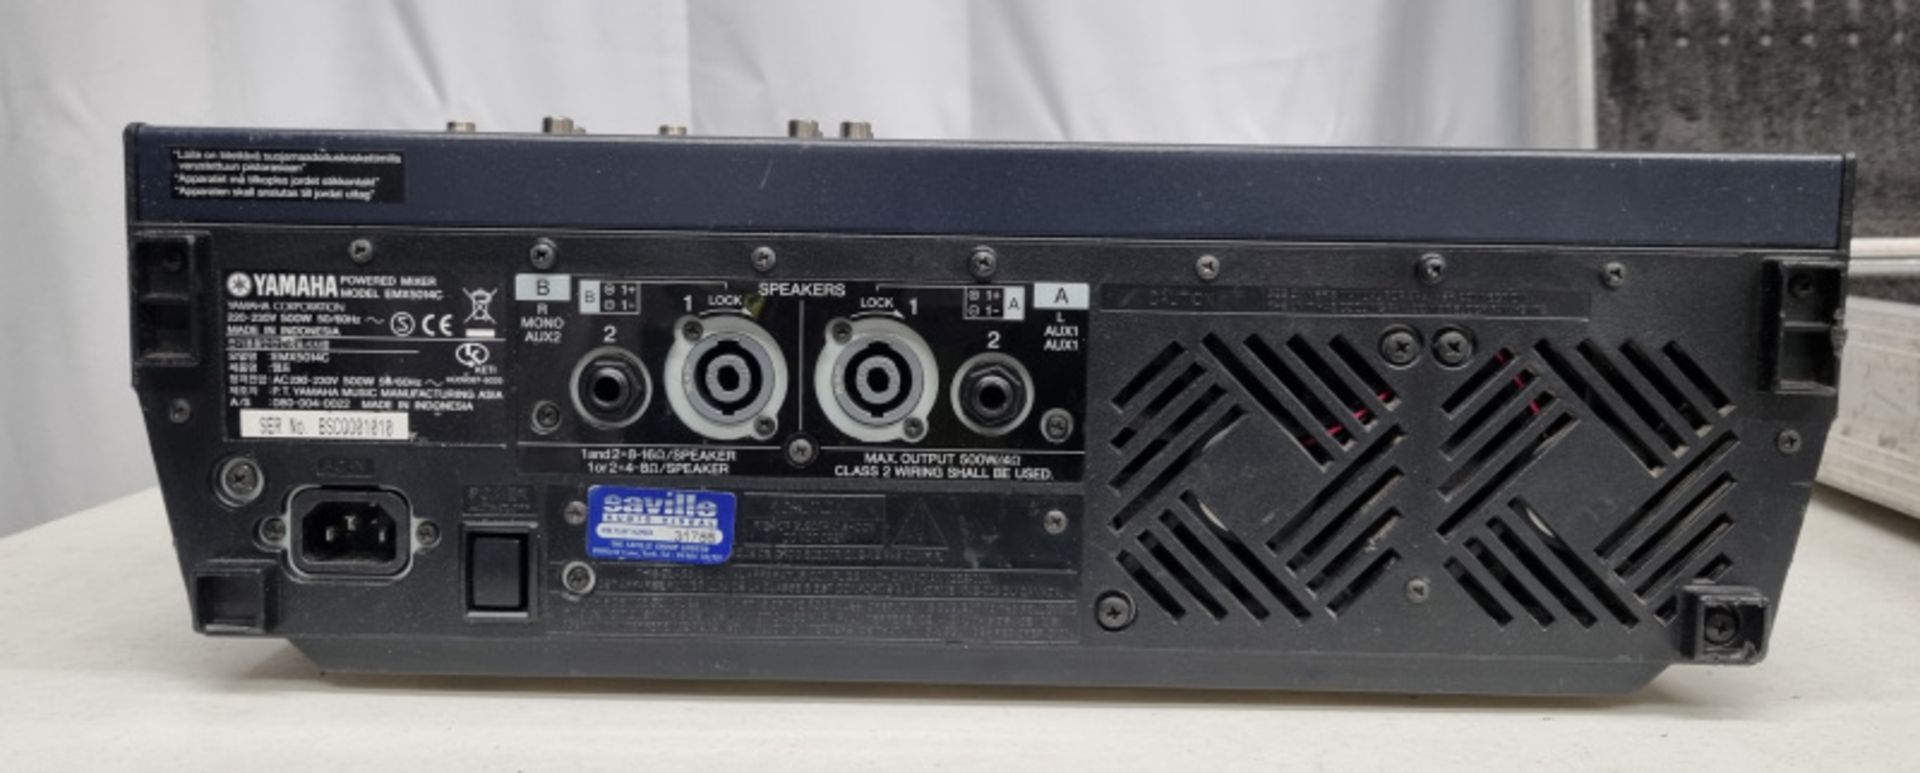 Yamaha EMX 5014C Mixer in flight case - Image 3 of 4